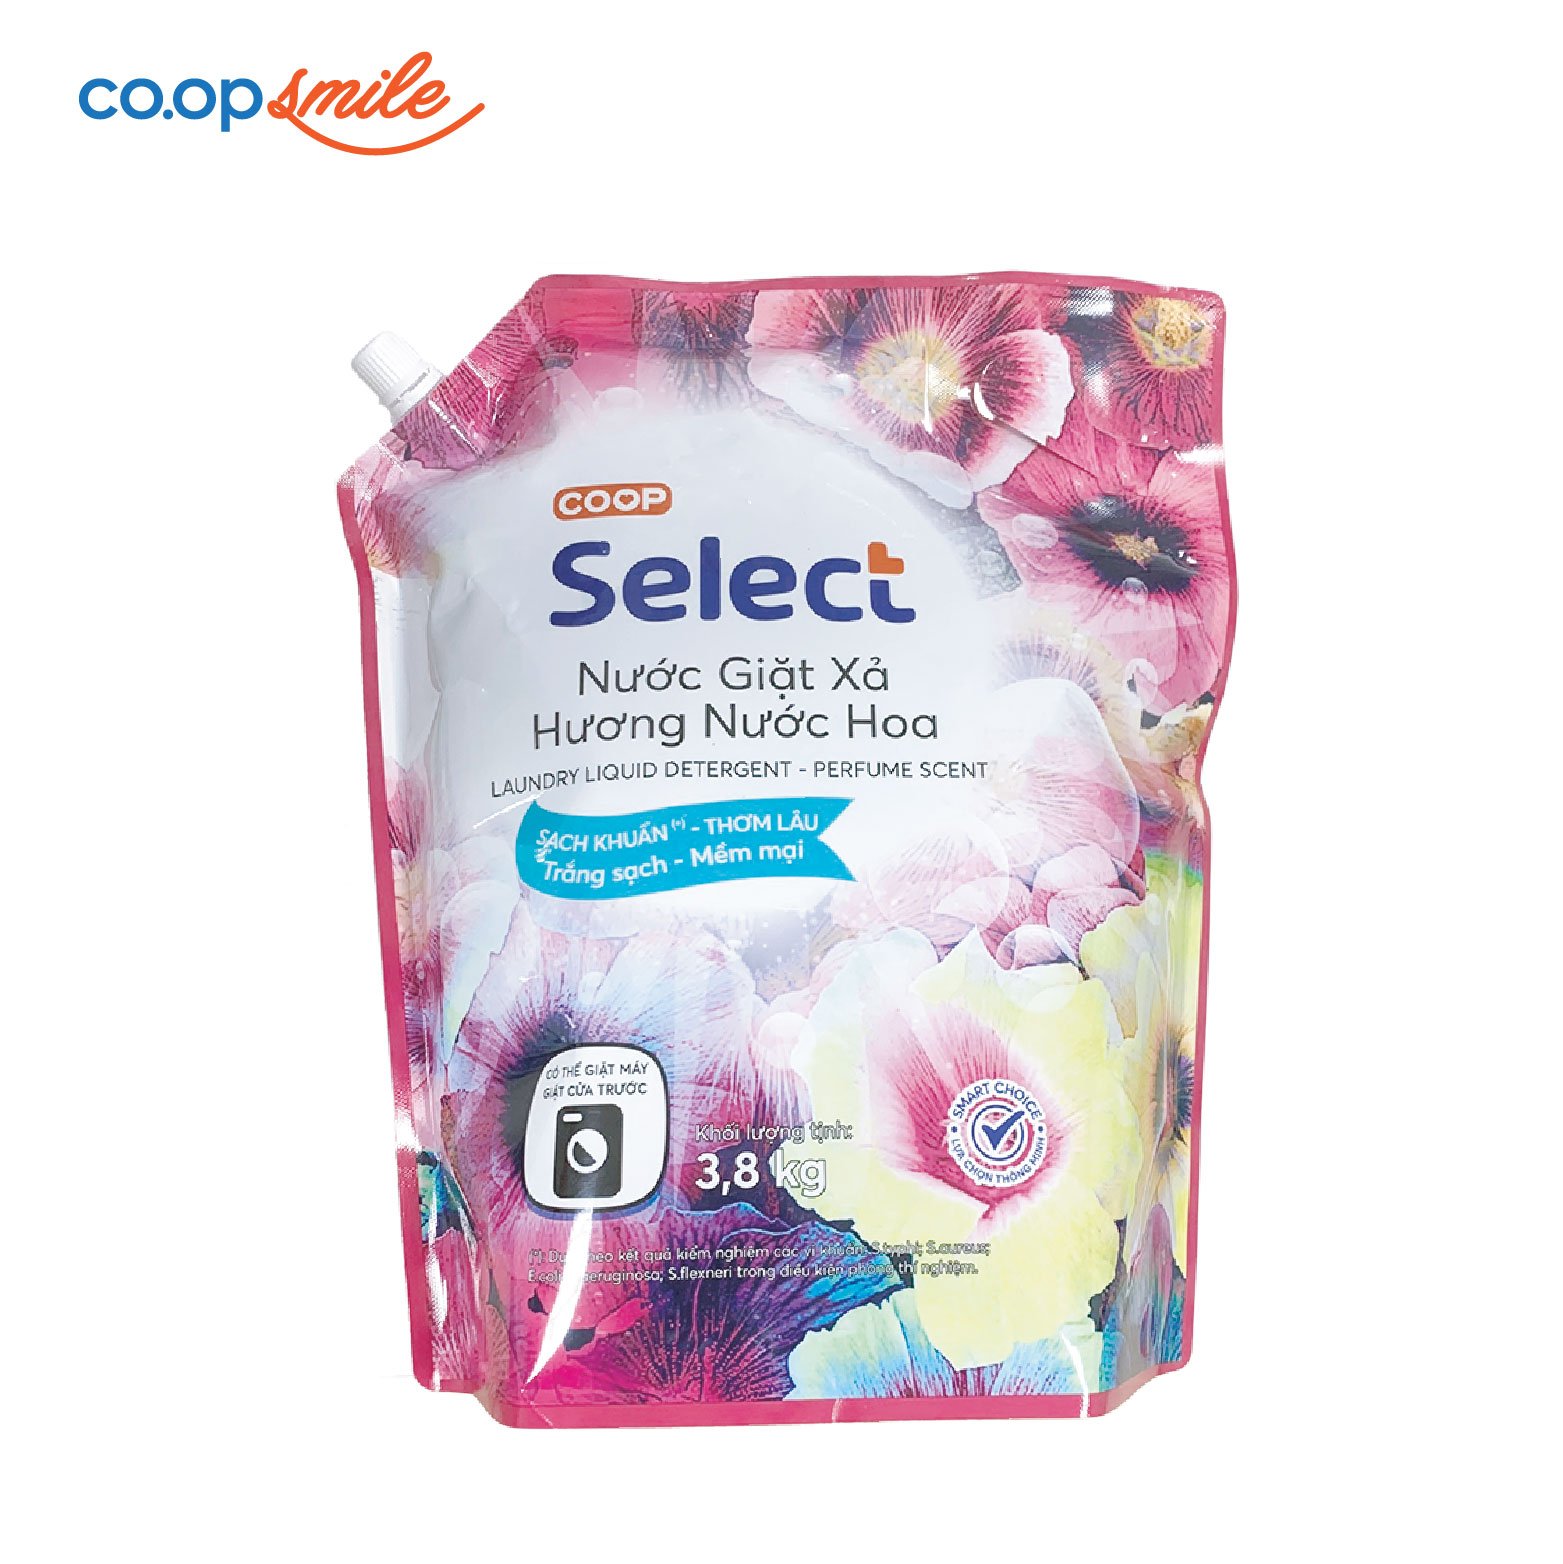 Nước giặt xả nước hoa Co.op Select túi 3.8kg